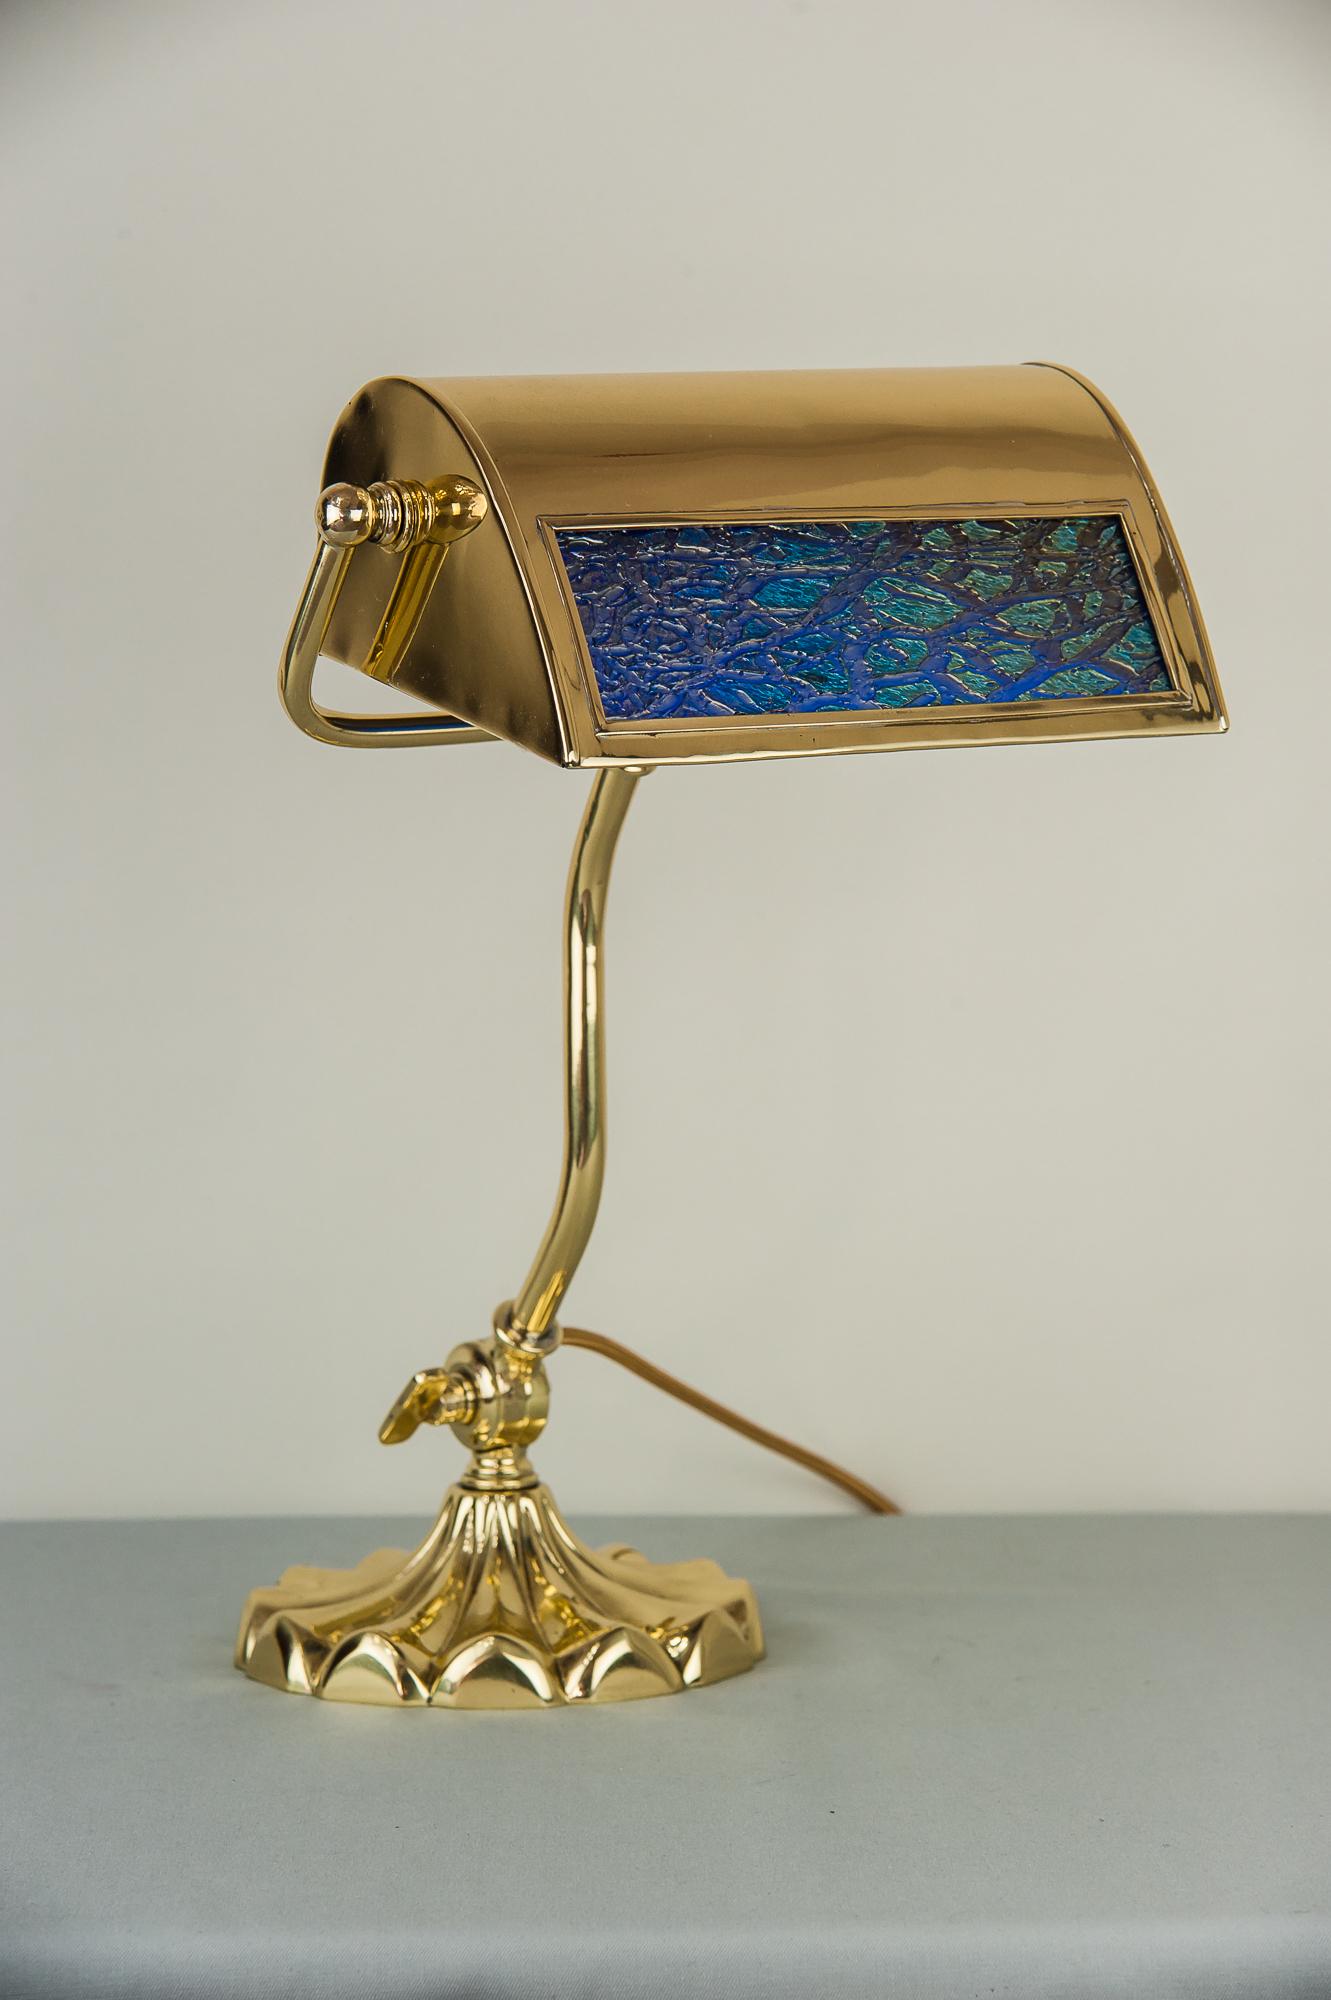 Jugendstil Table Lamp circa 1909 with Original Lötz Glass 1